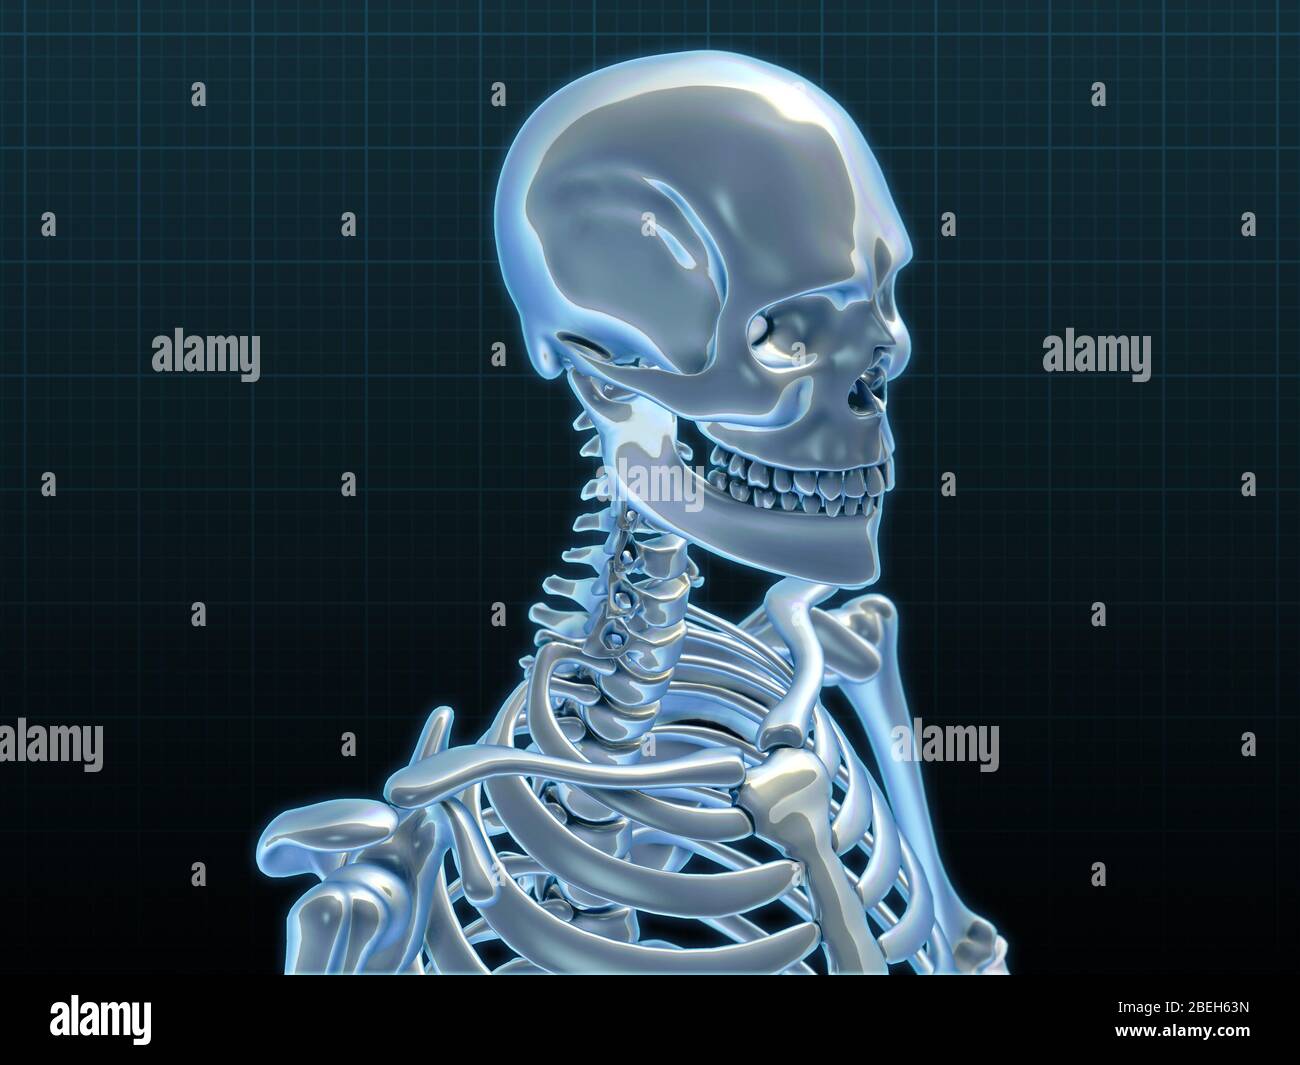 Human Skeleton, artwork Stock Photo